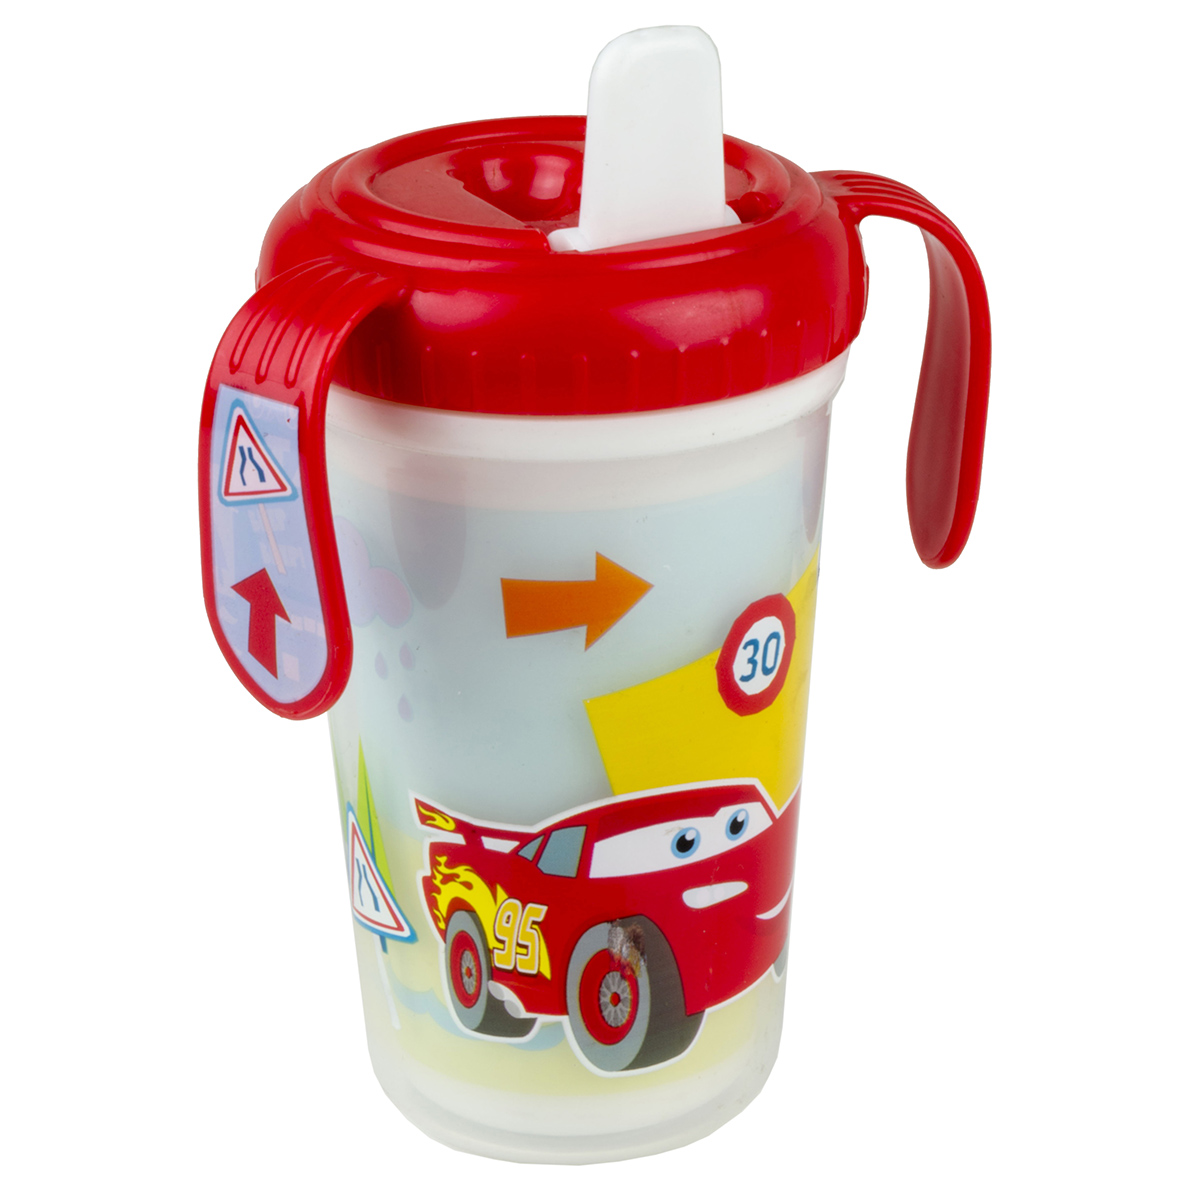 Disney Pixar Cars Baby Sippy Cup eBay